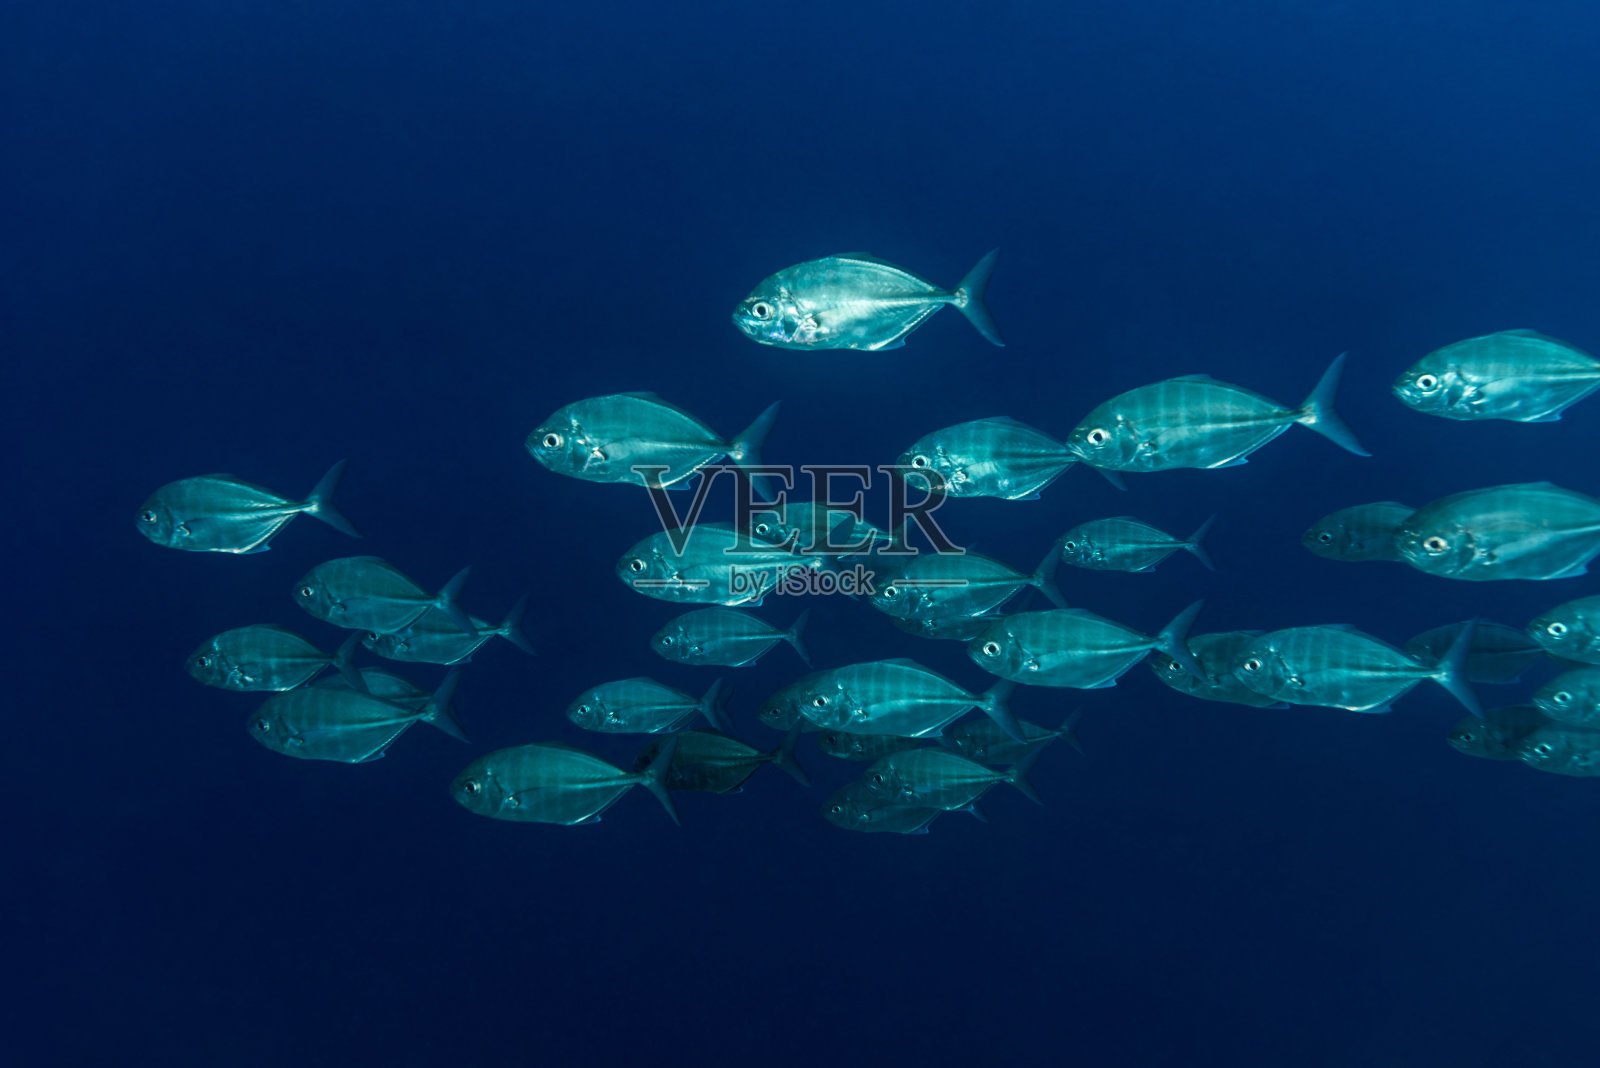 密克罗尼西亚帕劳的杰克鱼照片摄影图片